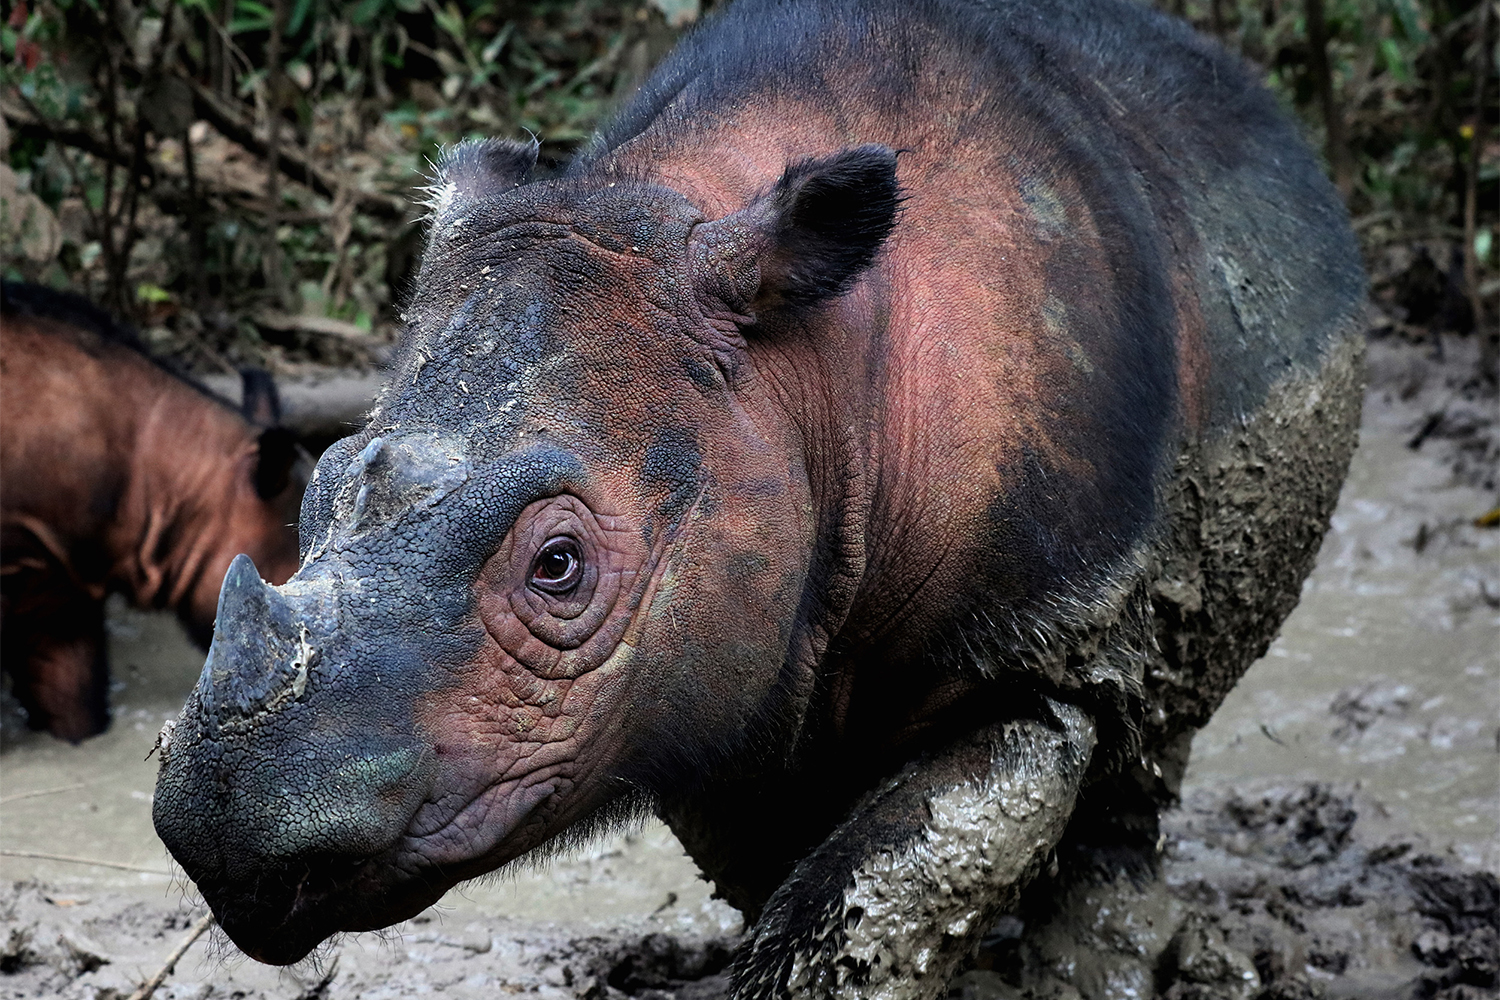 El rinoceronte de Sumatra (Dicerorhinus sumatrensis) es uno de los mamíferos más amenazados de la Tierra. Aproximadamente 80 individuos permanecen en el norte de Sumatra, Indonesia, pero la caza furtiva por sus colmillos y la pérdida de hábitat los amenazan con la extinción. (Crédito de la imagen: Rhett Buttler / Mongabay)